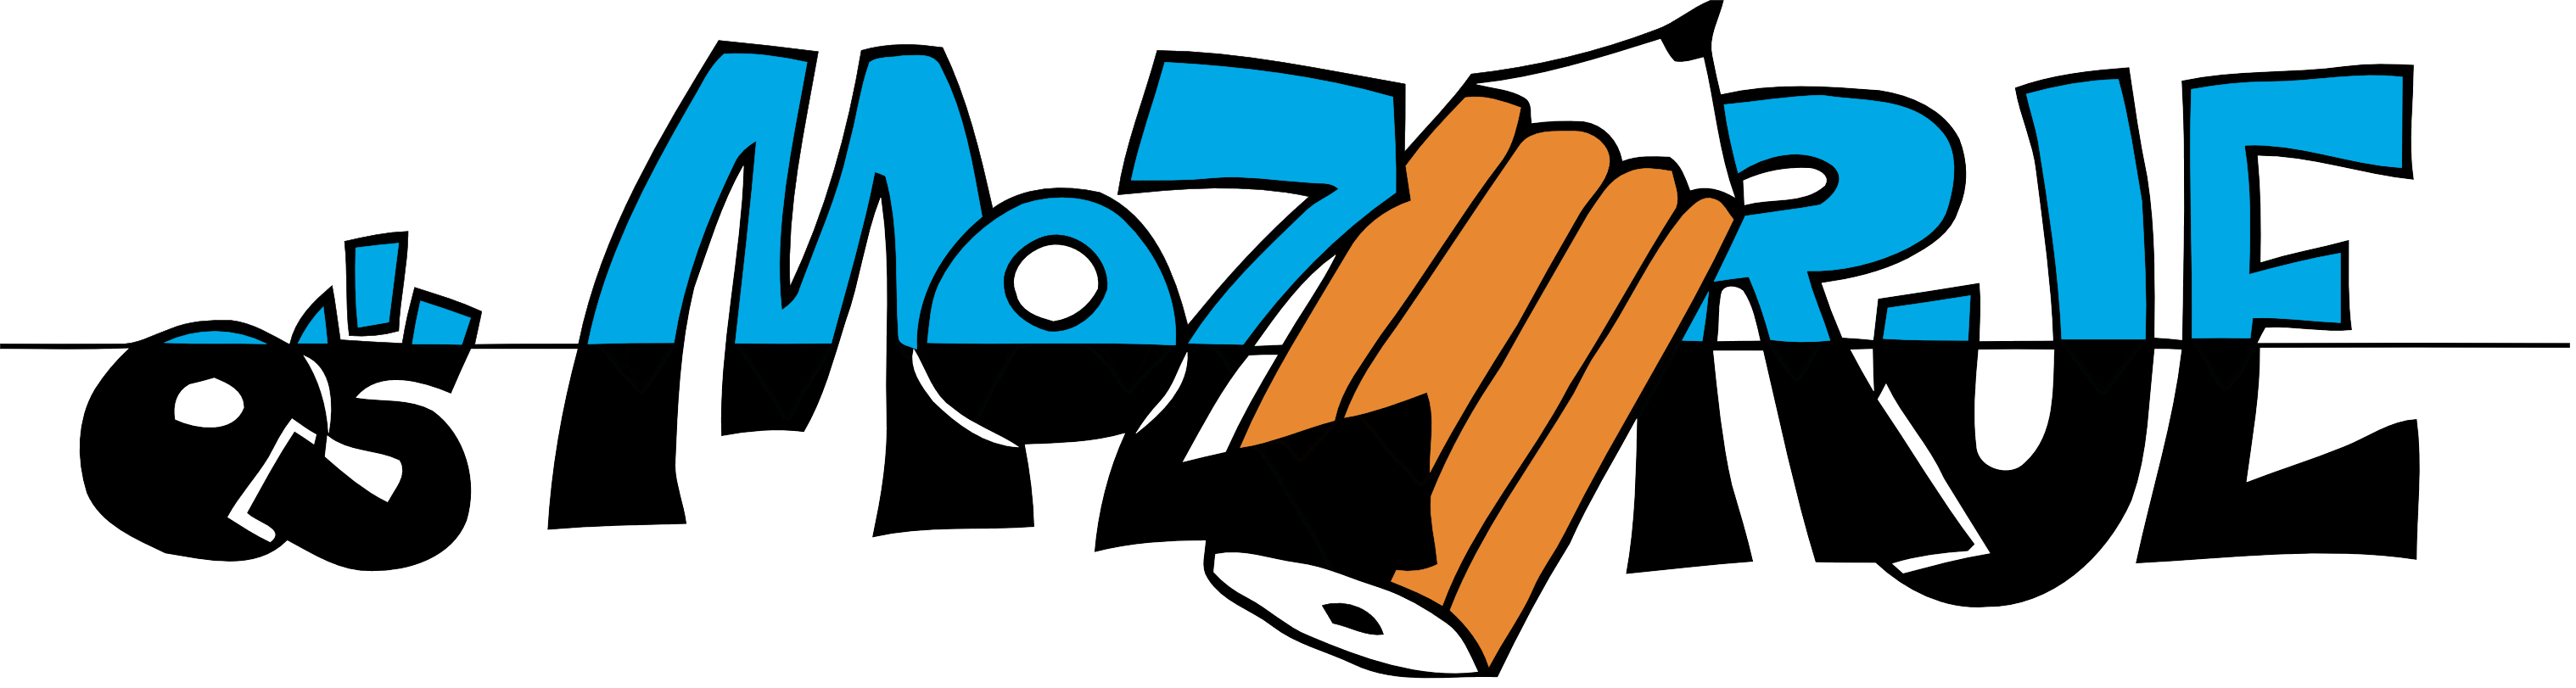 logo 1 png